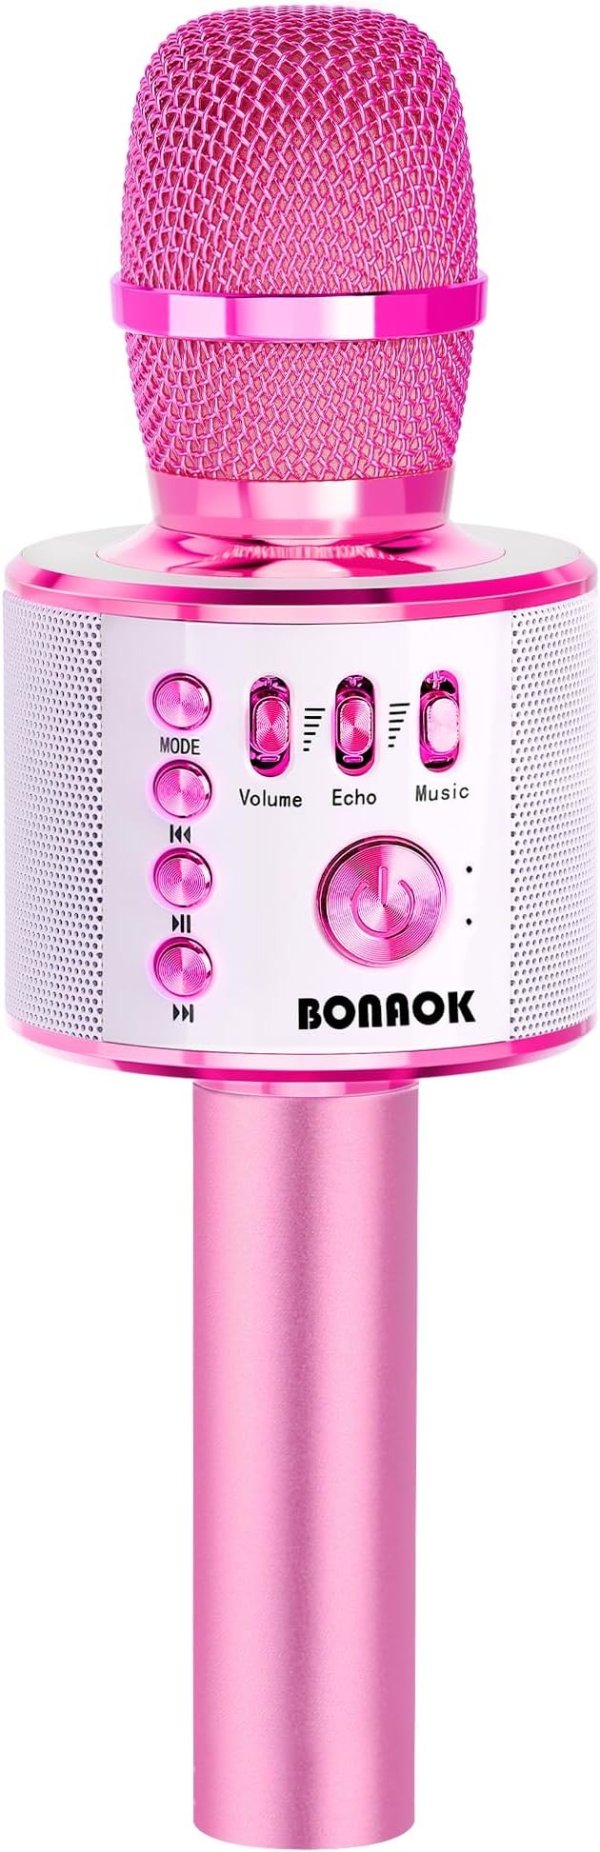 BONAOK  无线蓝牙麦克风 浅粉色